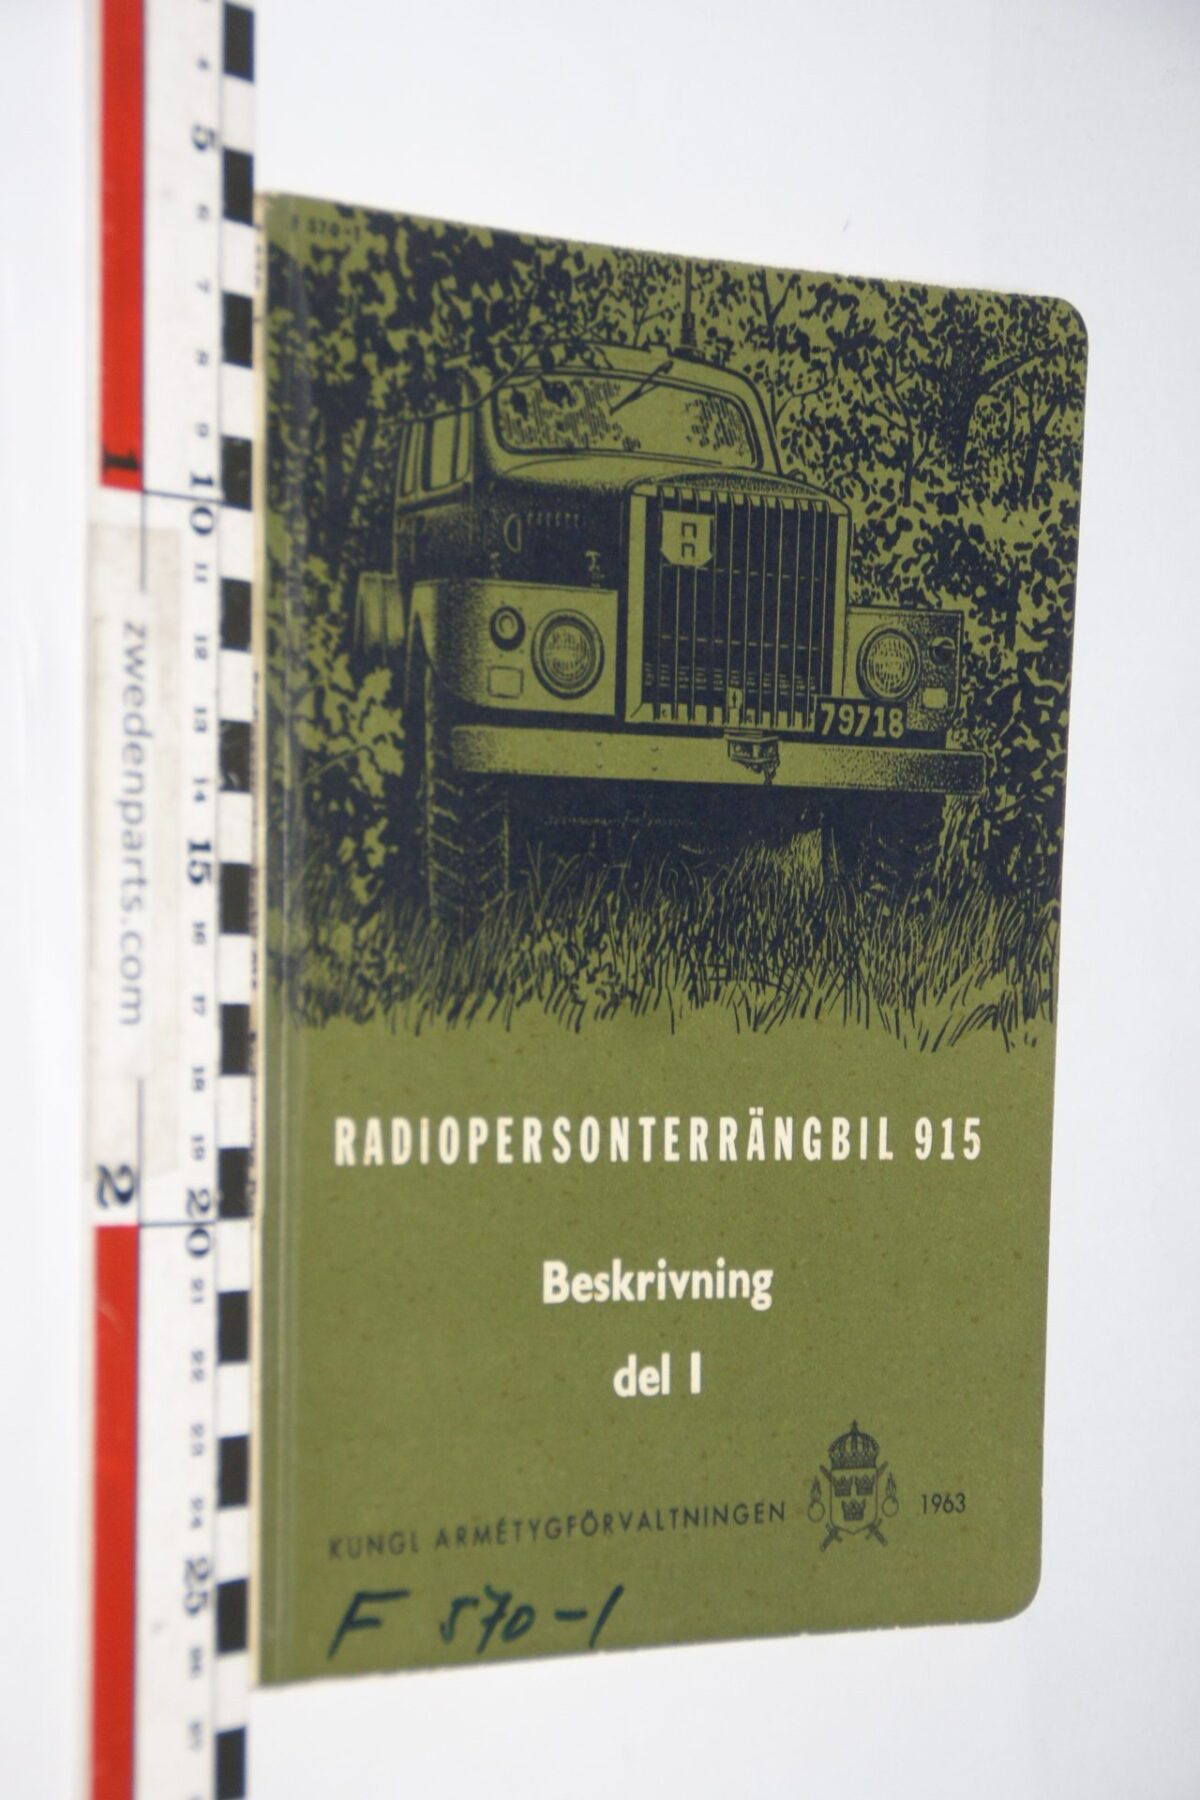 DSC07201 1963 origineel Volvo Radiopersonterrangbil 915 del 1 instruktionsbok 1 van 7.500 Svenskt TP 260-1, F570-1